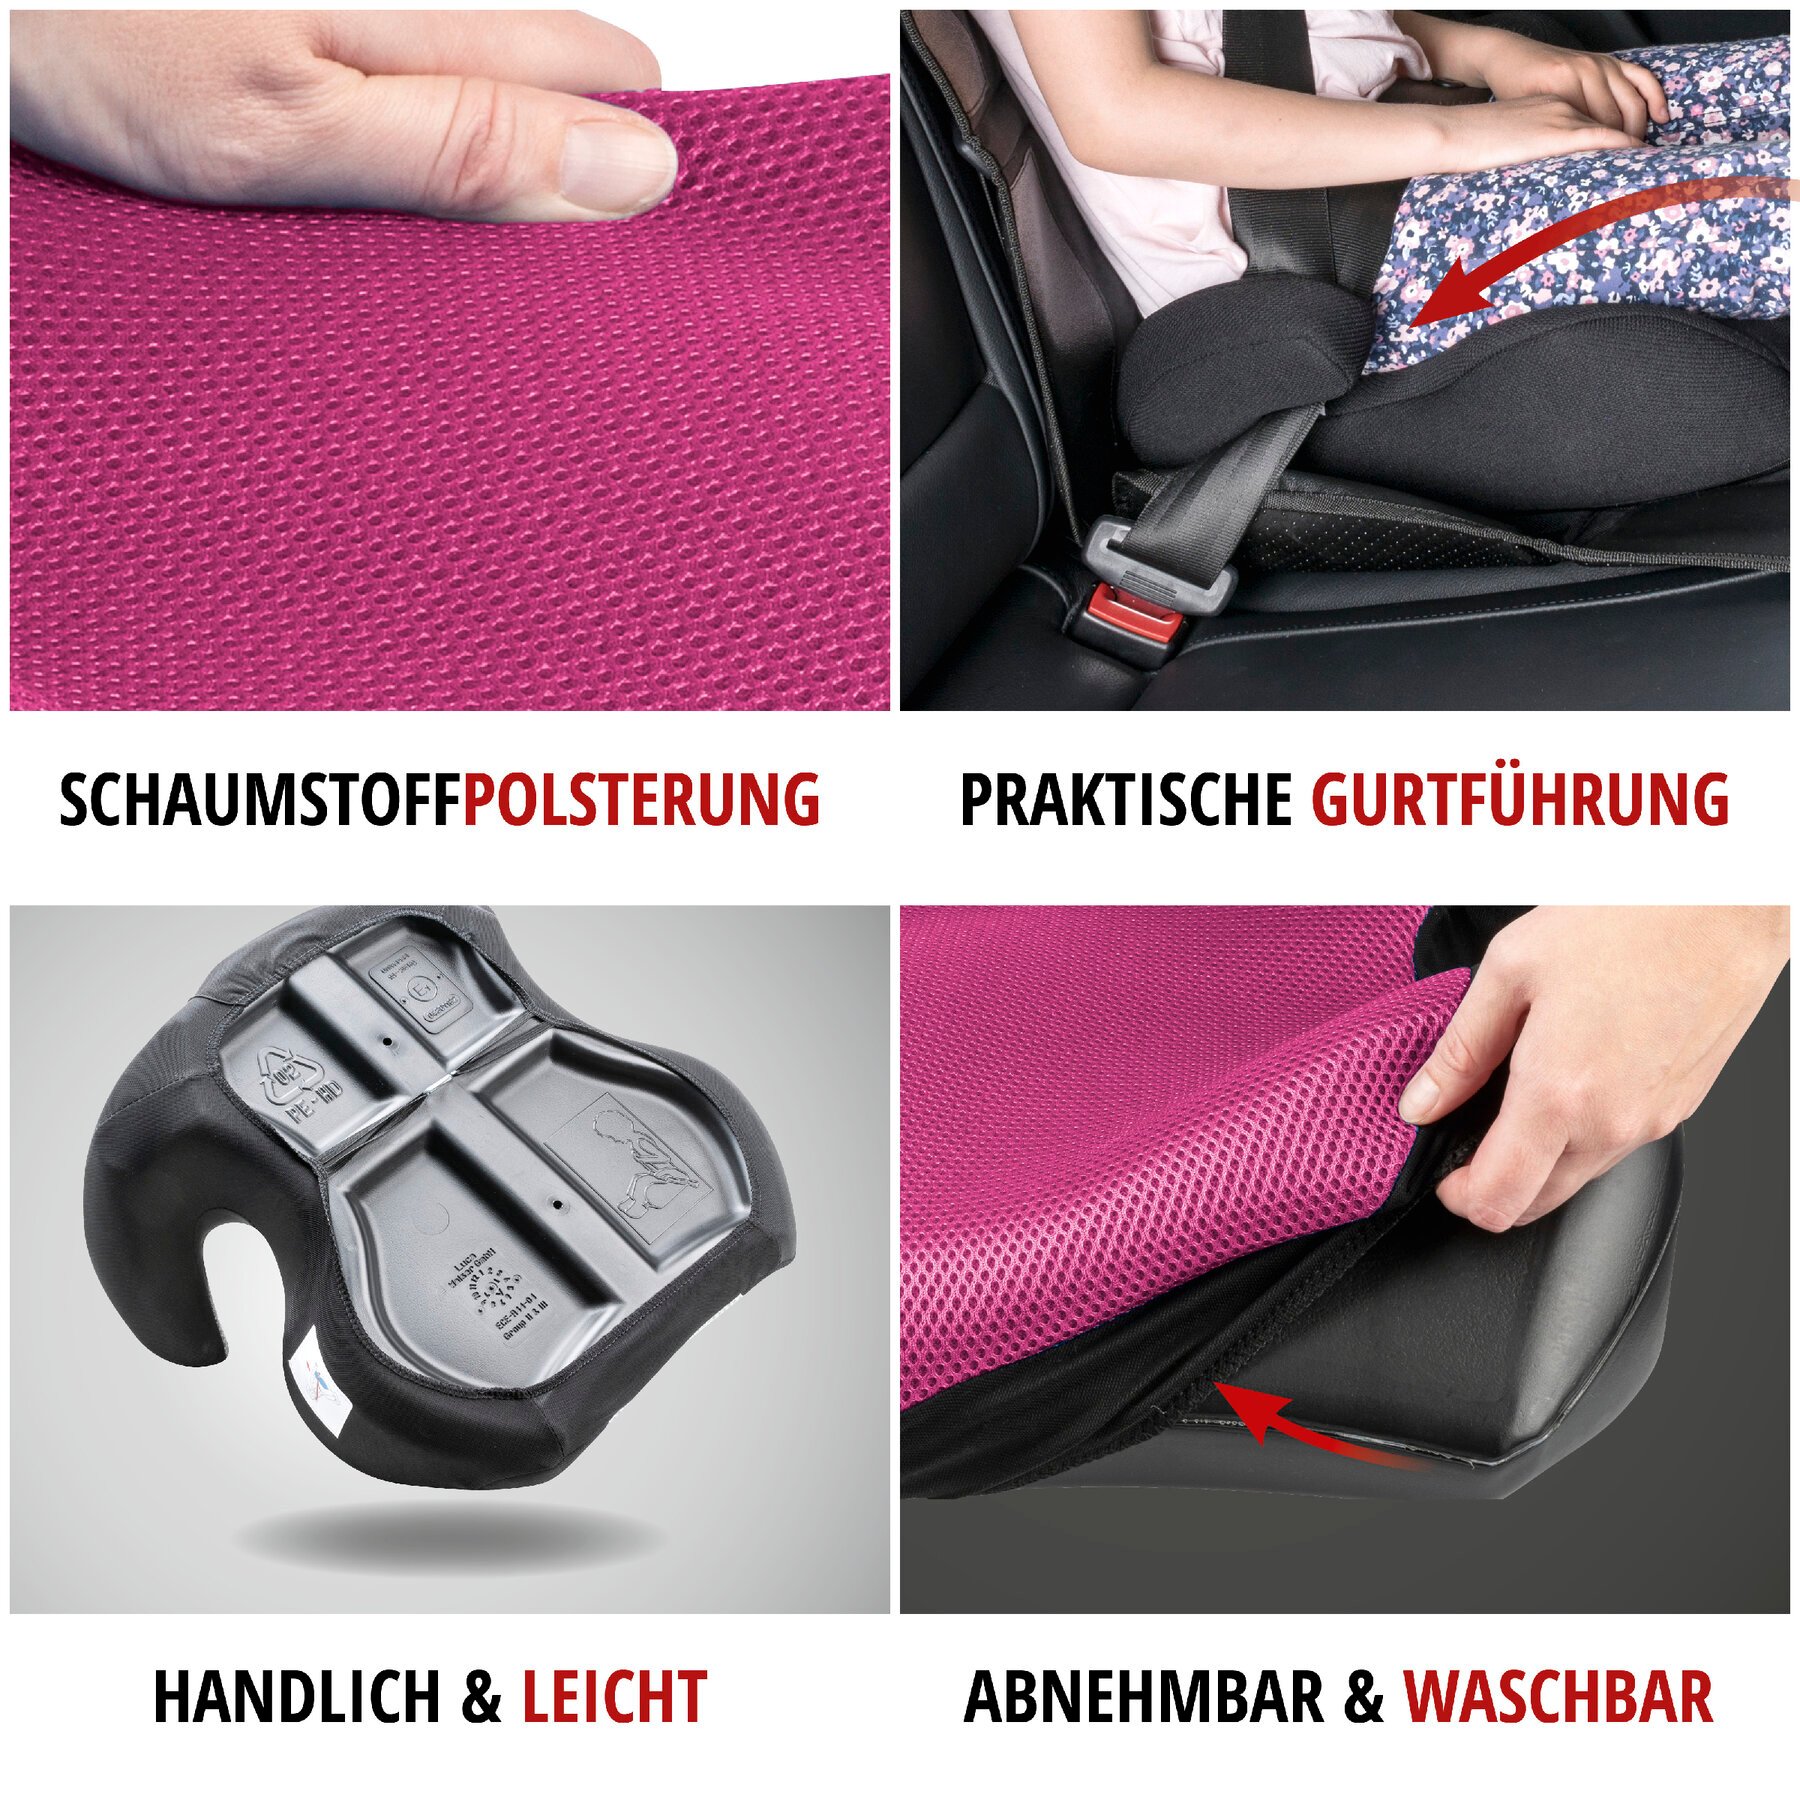 Kindersitzerhöhung Lino, Auto-Kindersitz ECE 44/04 geprüft schwarz/rosa